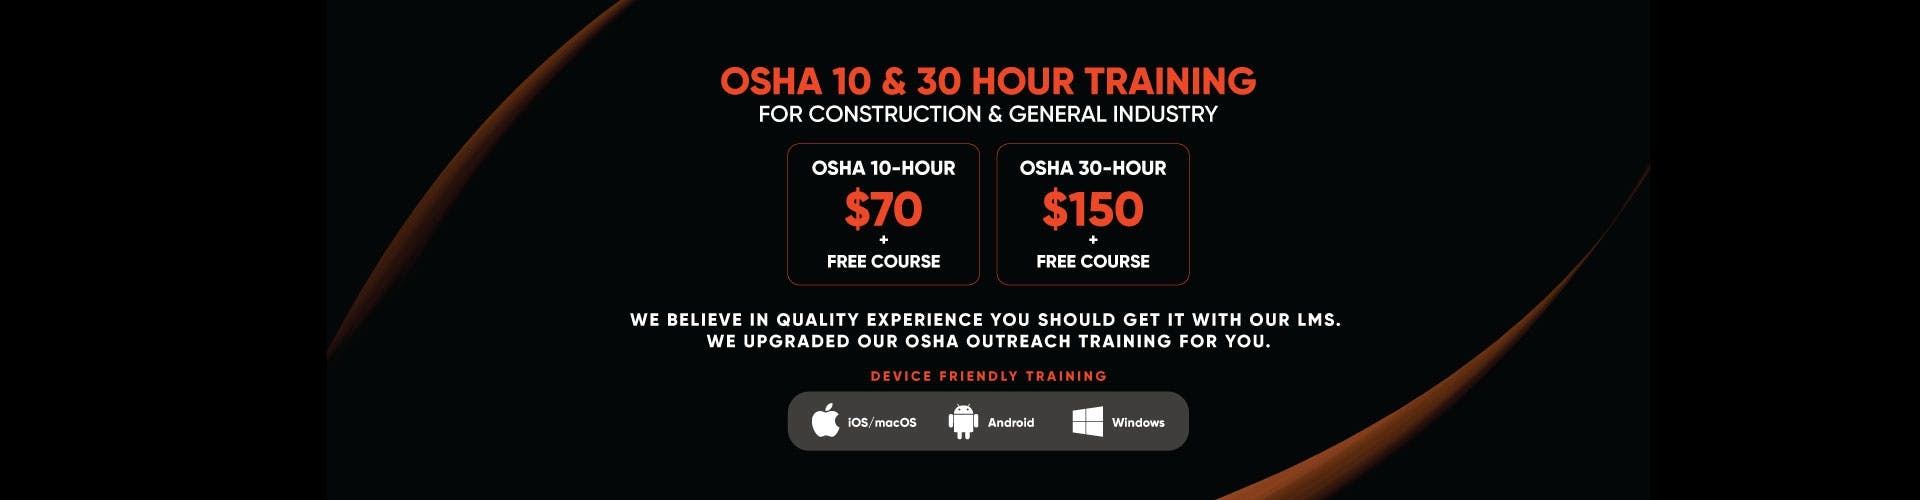 OSHA Online Center banner Image